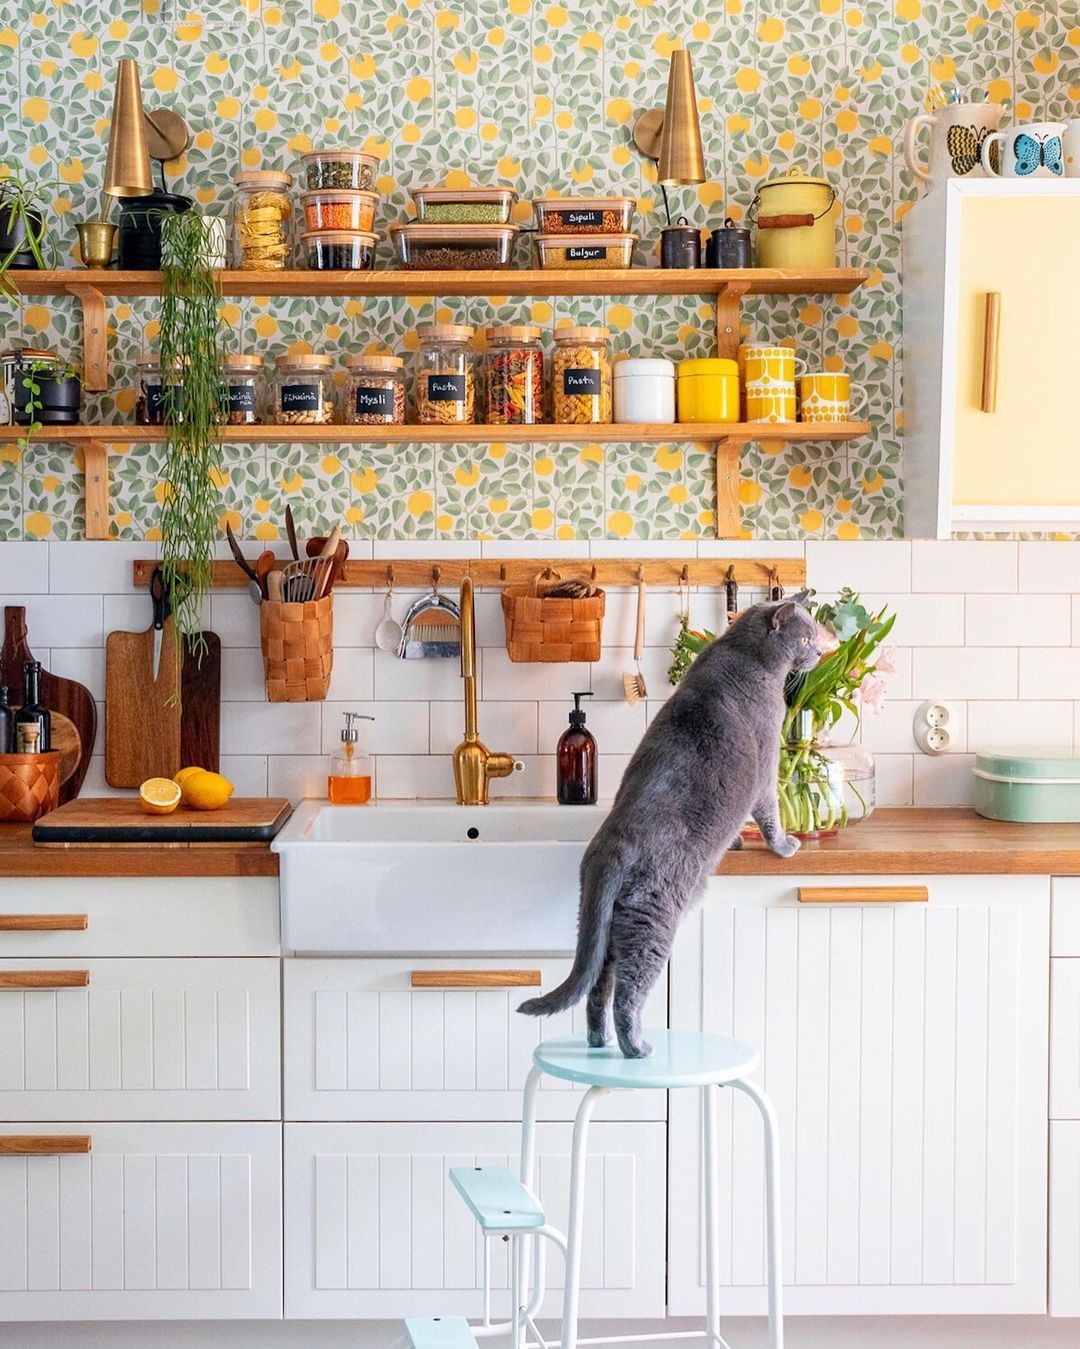 Décor do dia: cozinha com estilo vintage e papel de parede colorido (Foto: Divulgação)